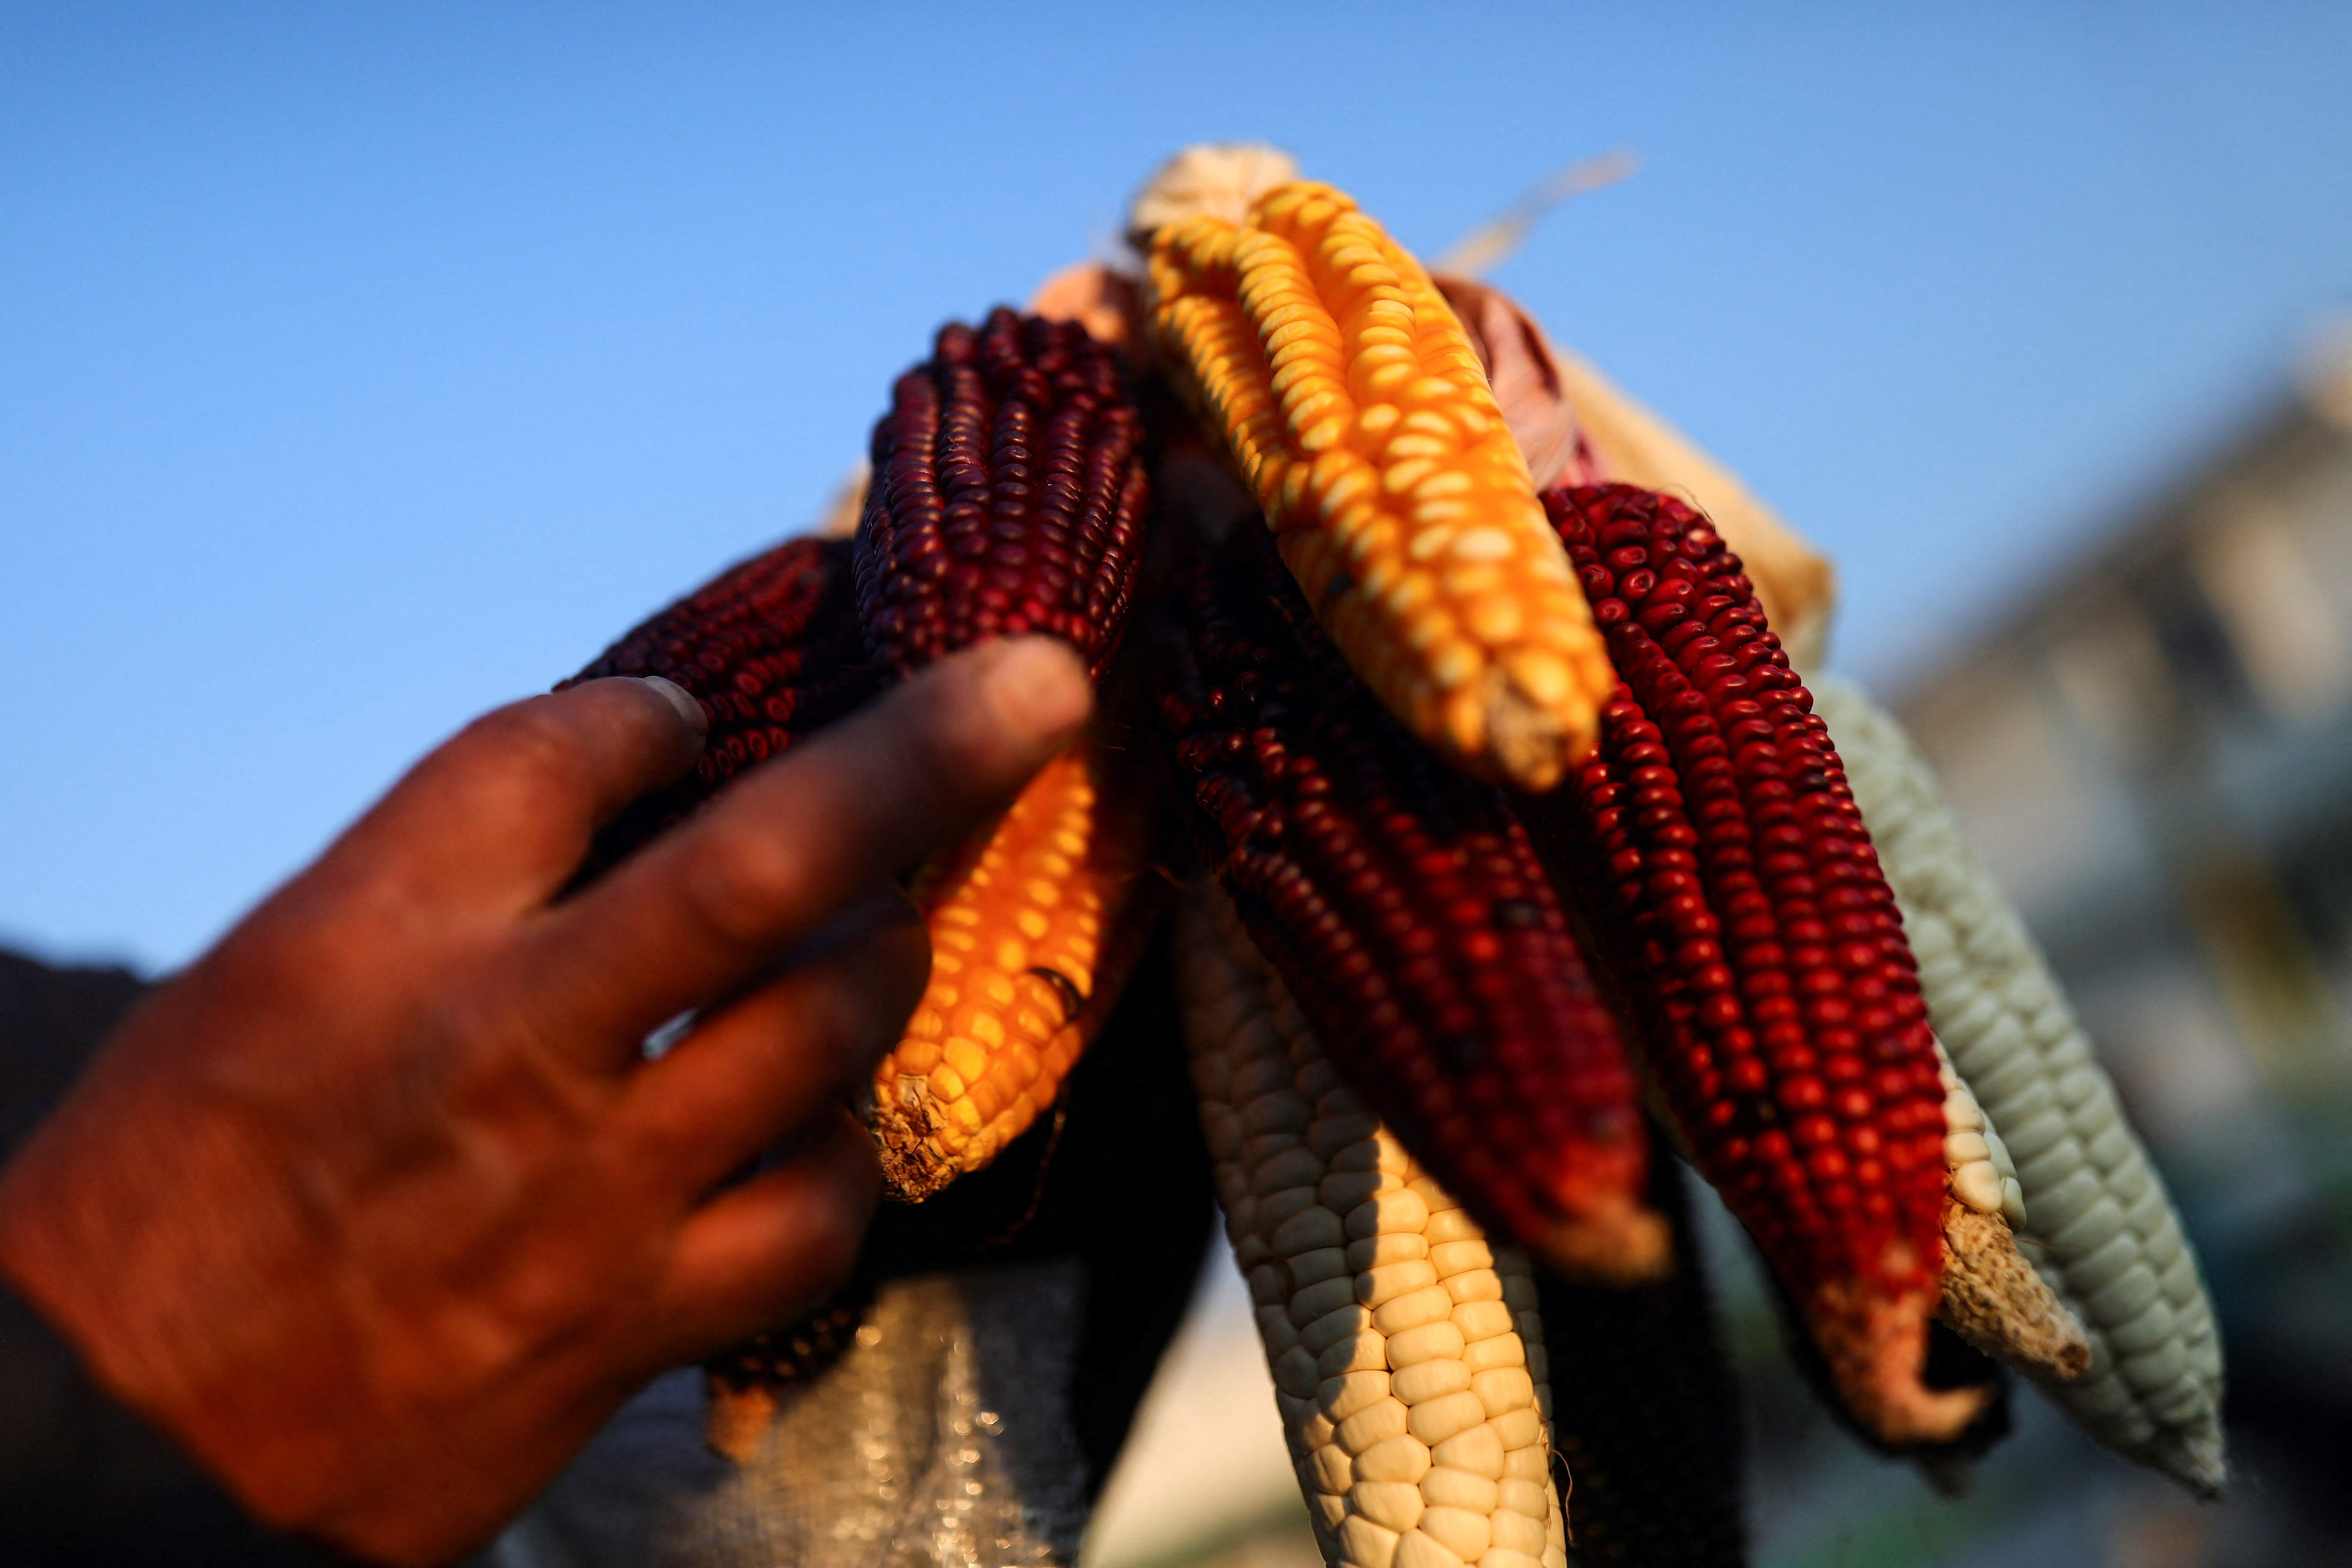 Un hombre muestra una mazorca de maiz en Mexico (REUTERS / Edgard Garrido)